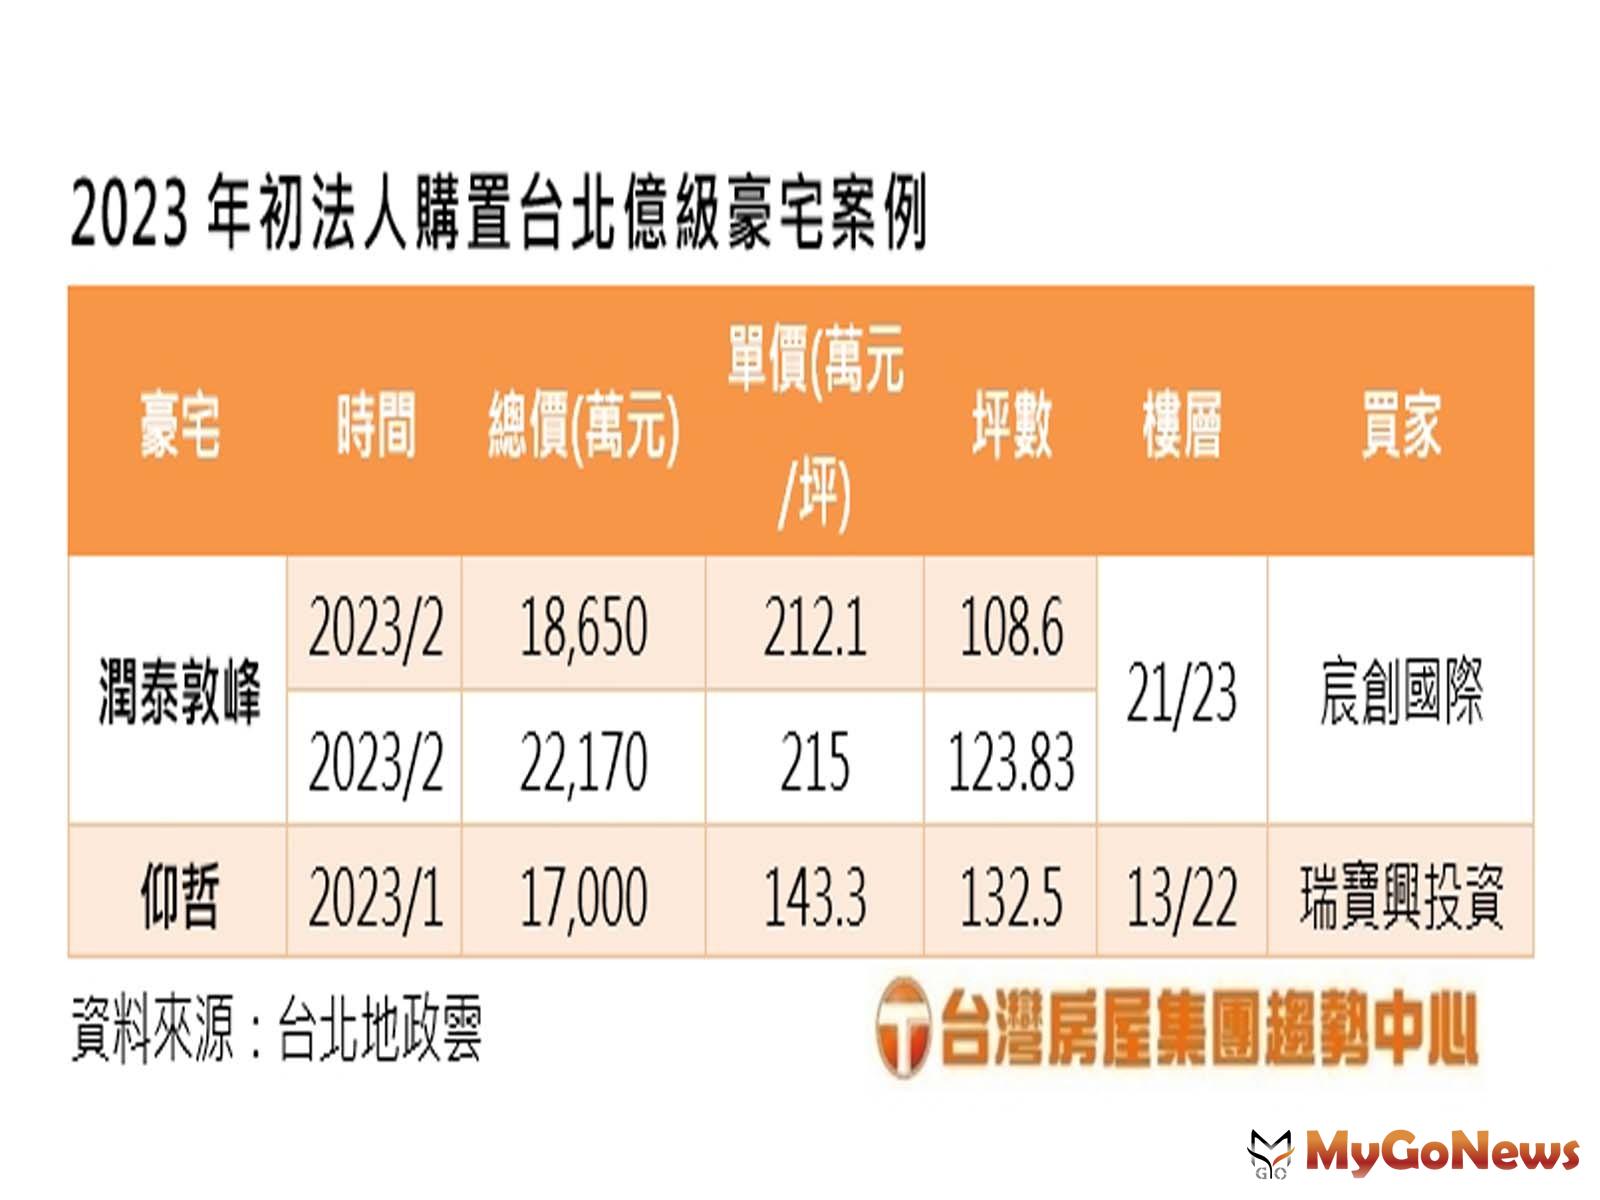 2023年初法人購置台北億級豪宅案例(圖/台灣房屋提供) MyGoNews房地產新聞 市場快訊